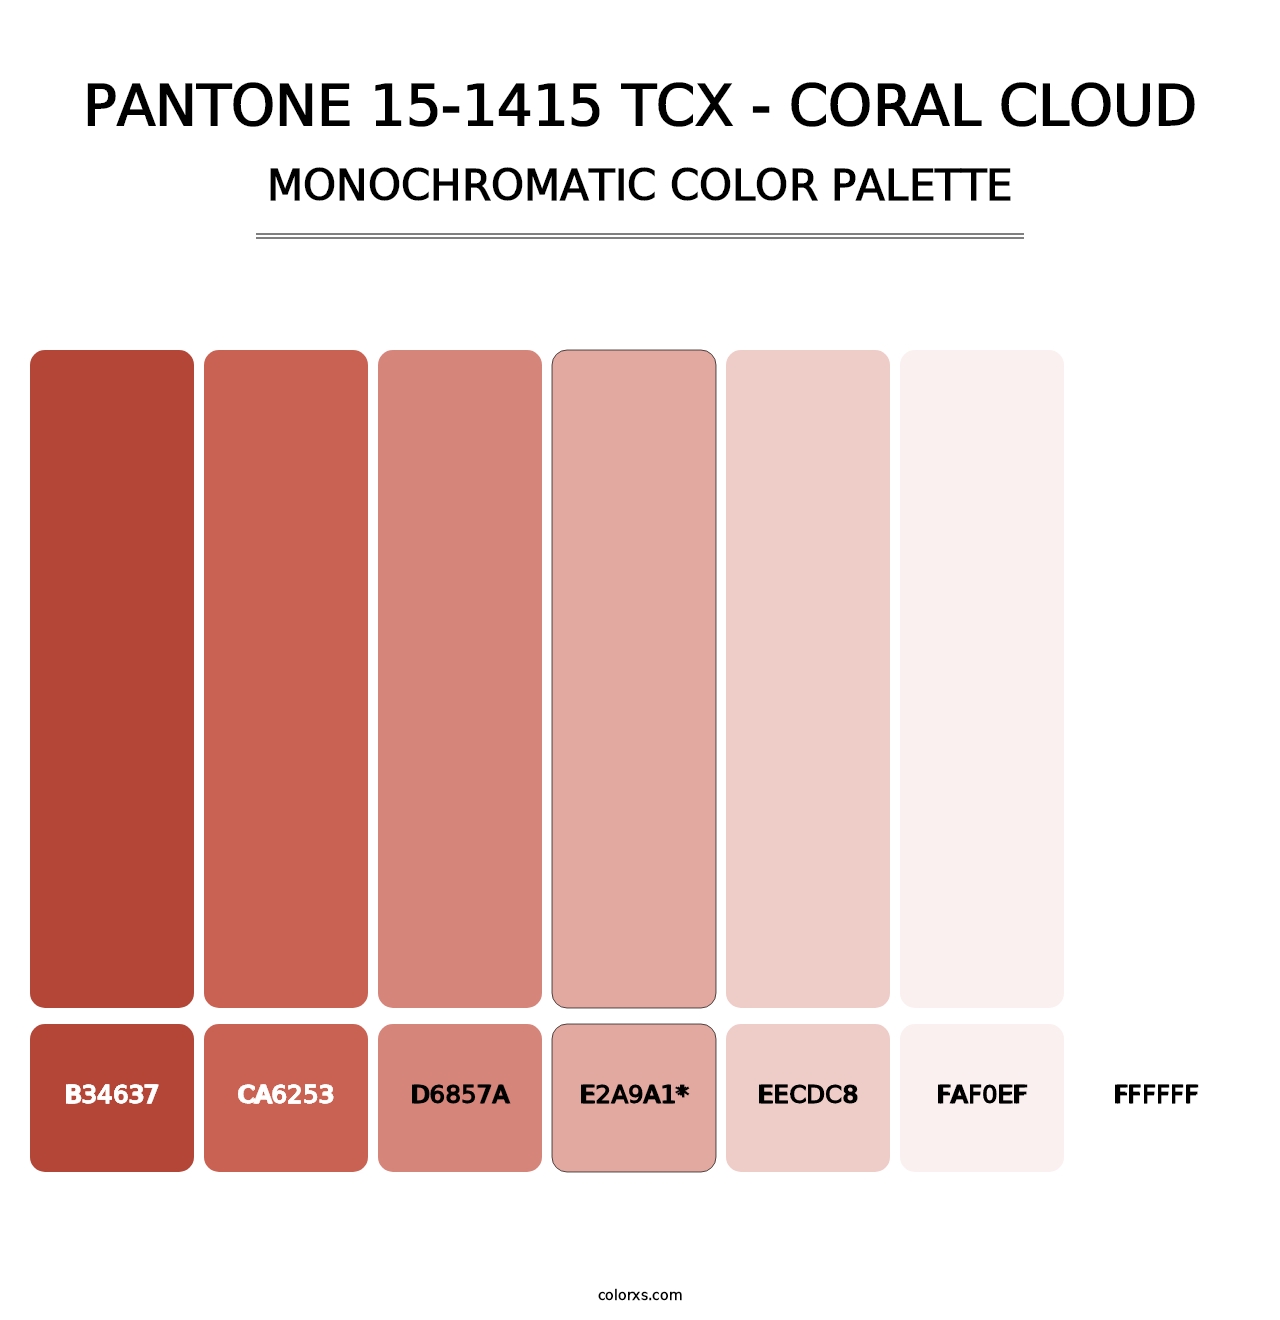 PANTONE 15-1415 TCX - Coral Cloud - Monochromatic Color Palette